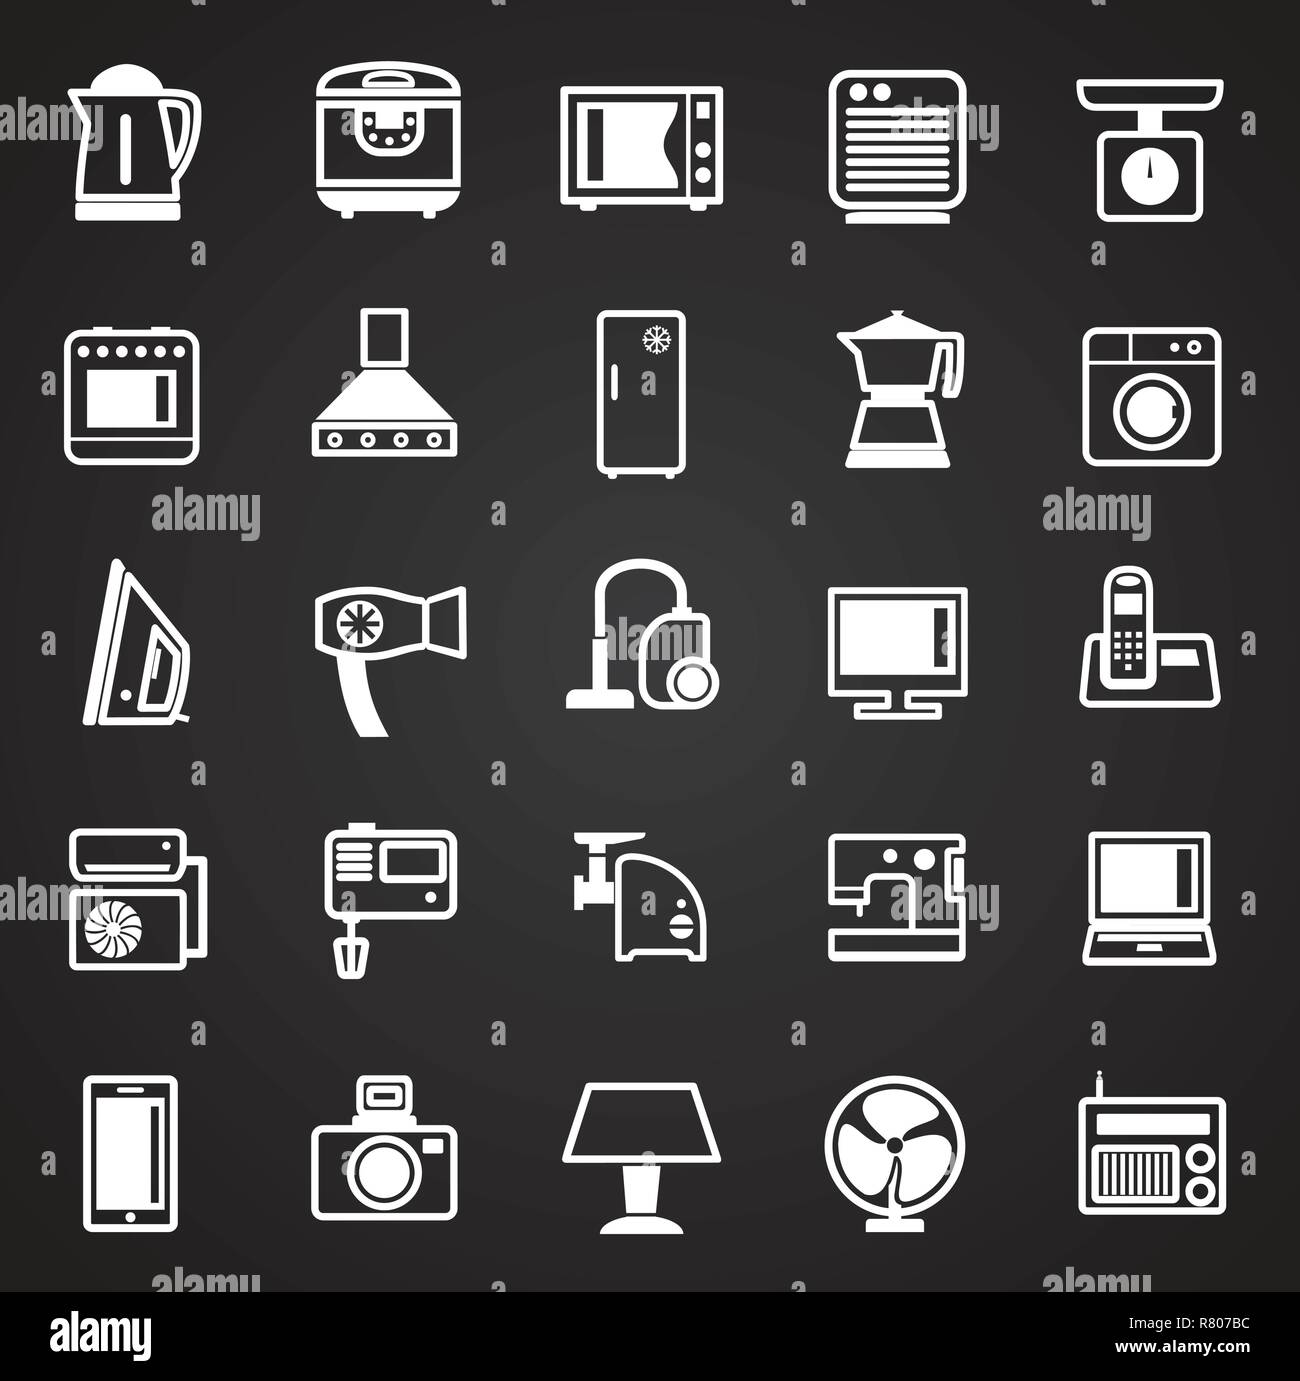 small kitchen appliances icon set, Stock vector